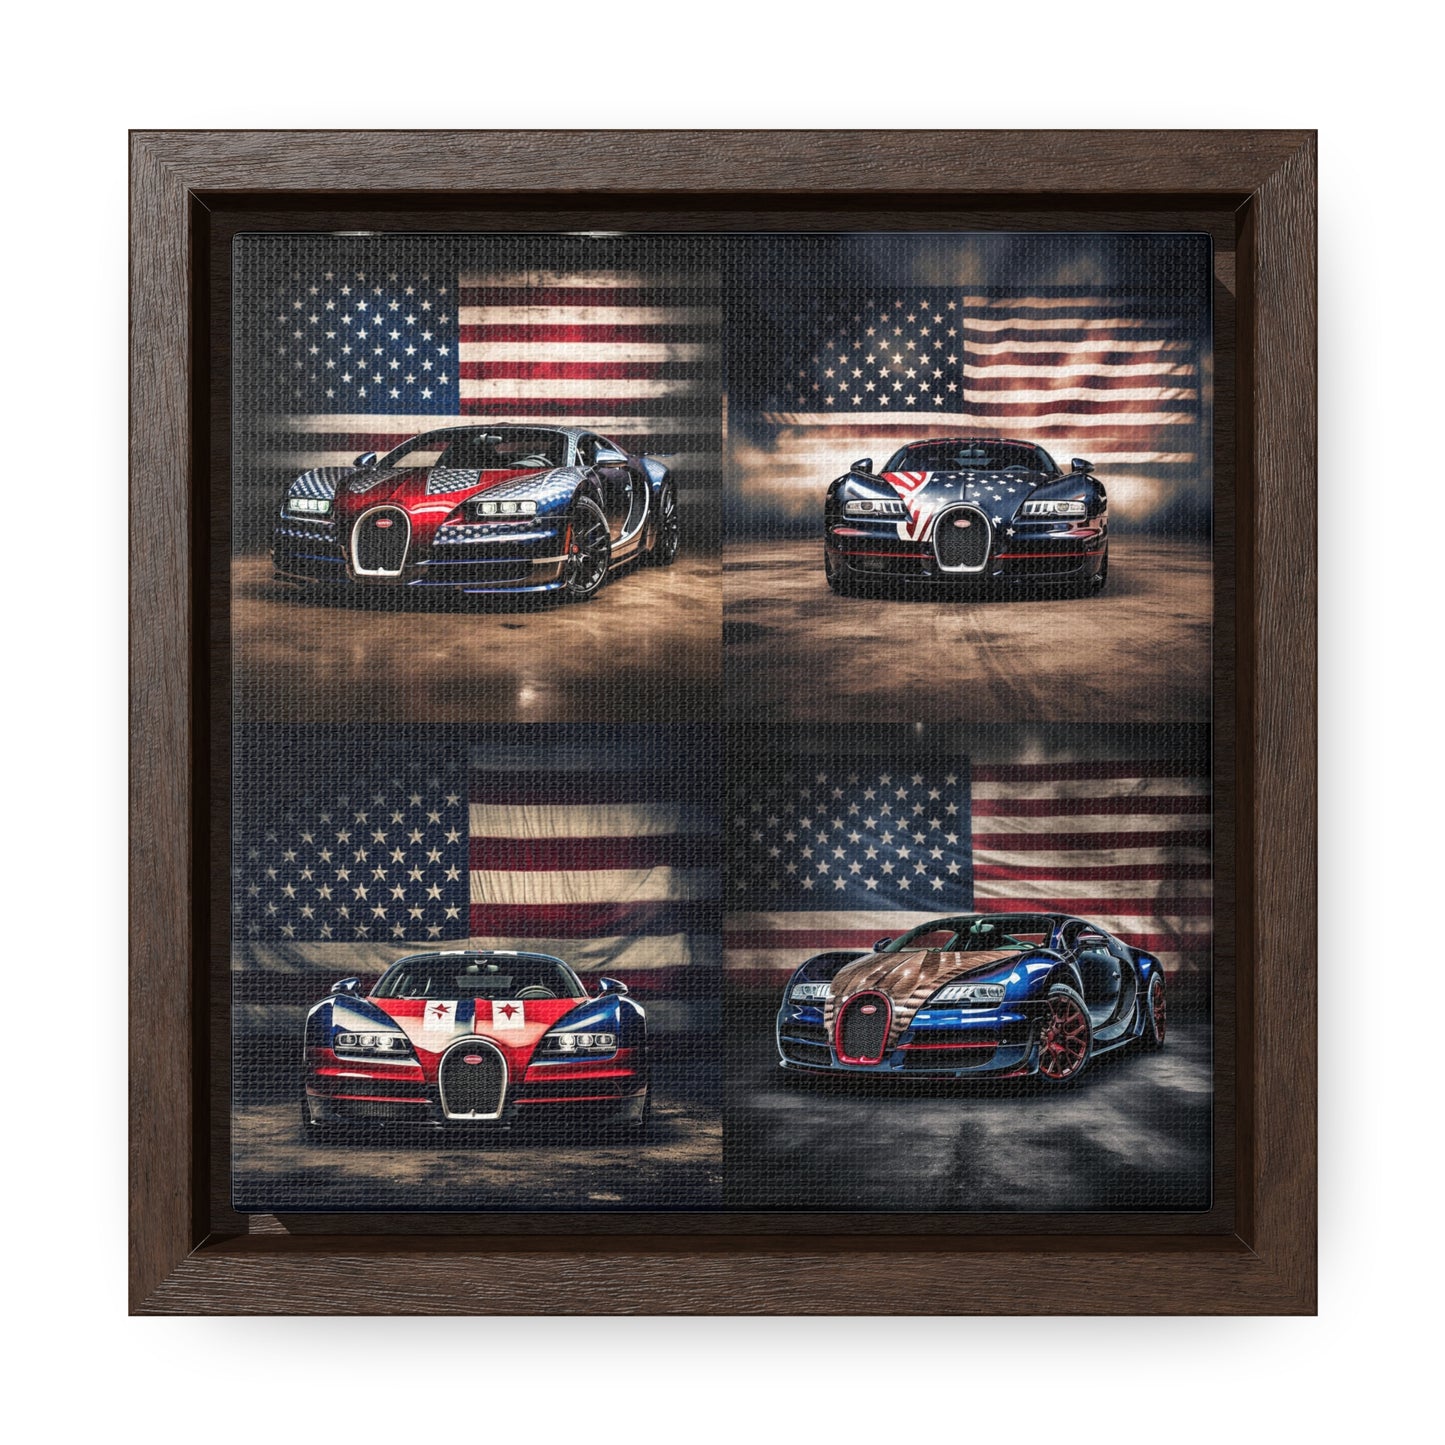 Gallery Canvas Wraps, Square Frame Bugatti American Flag 5